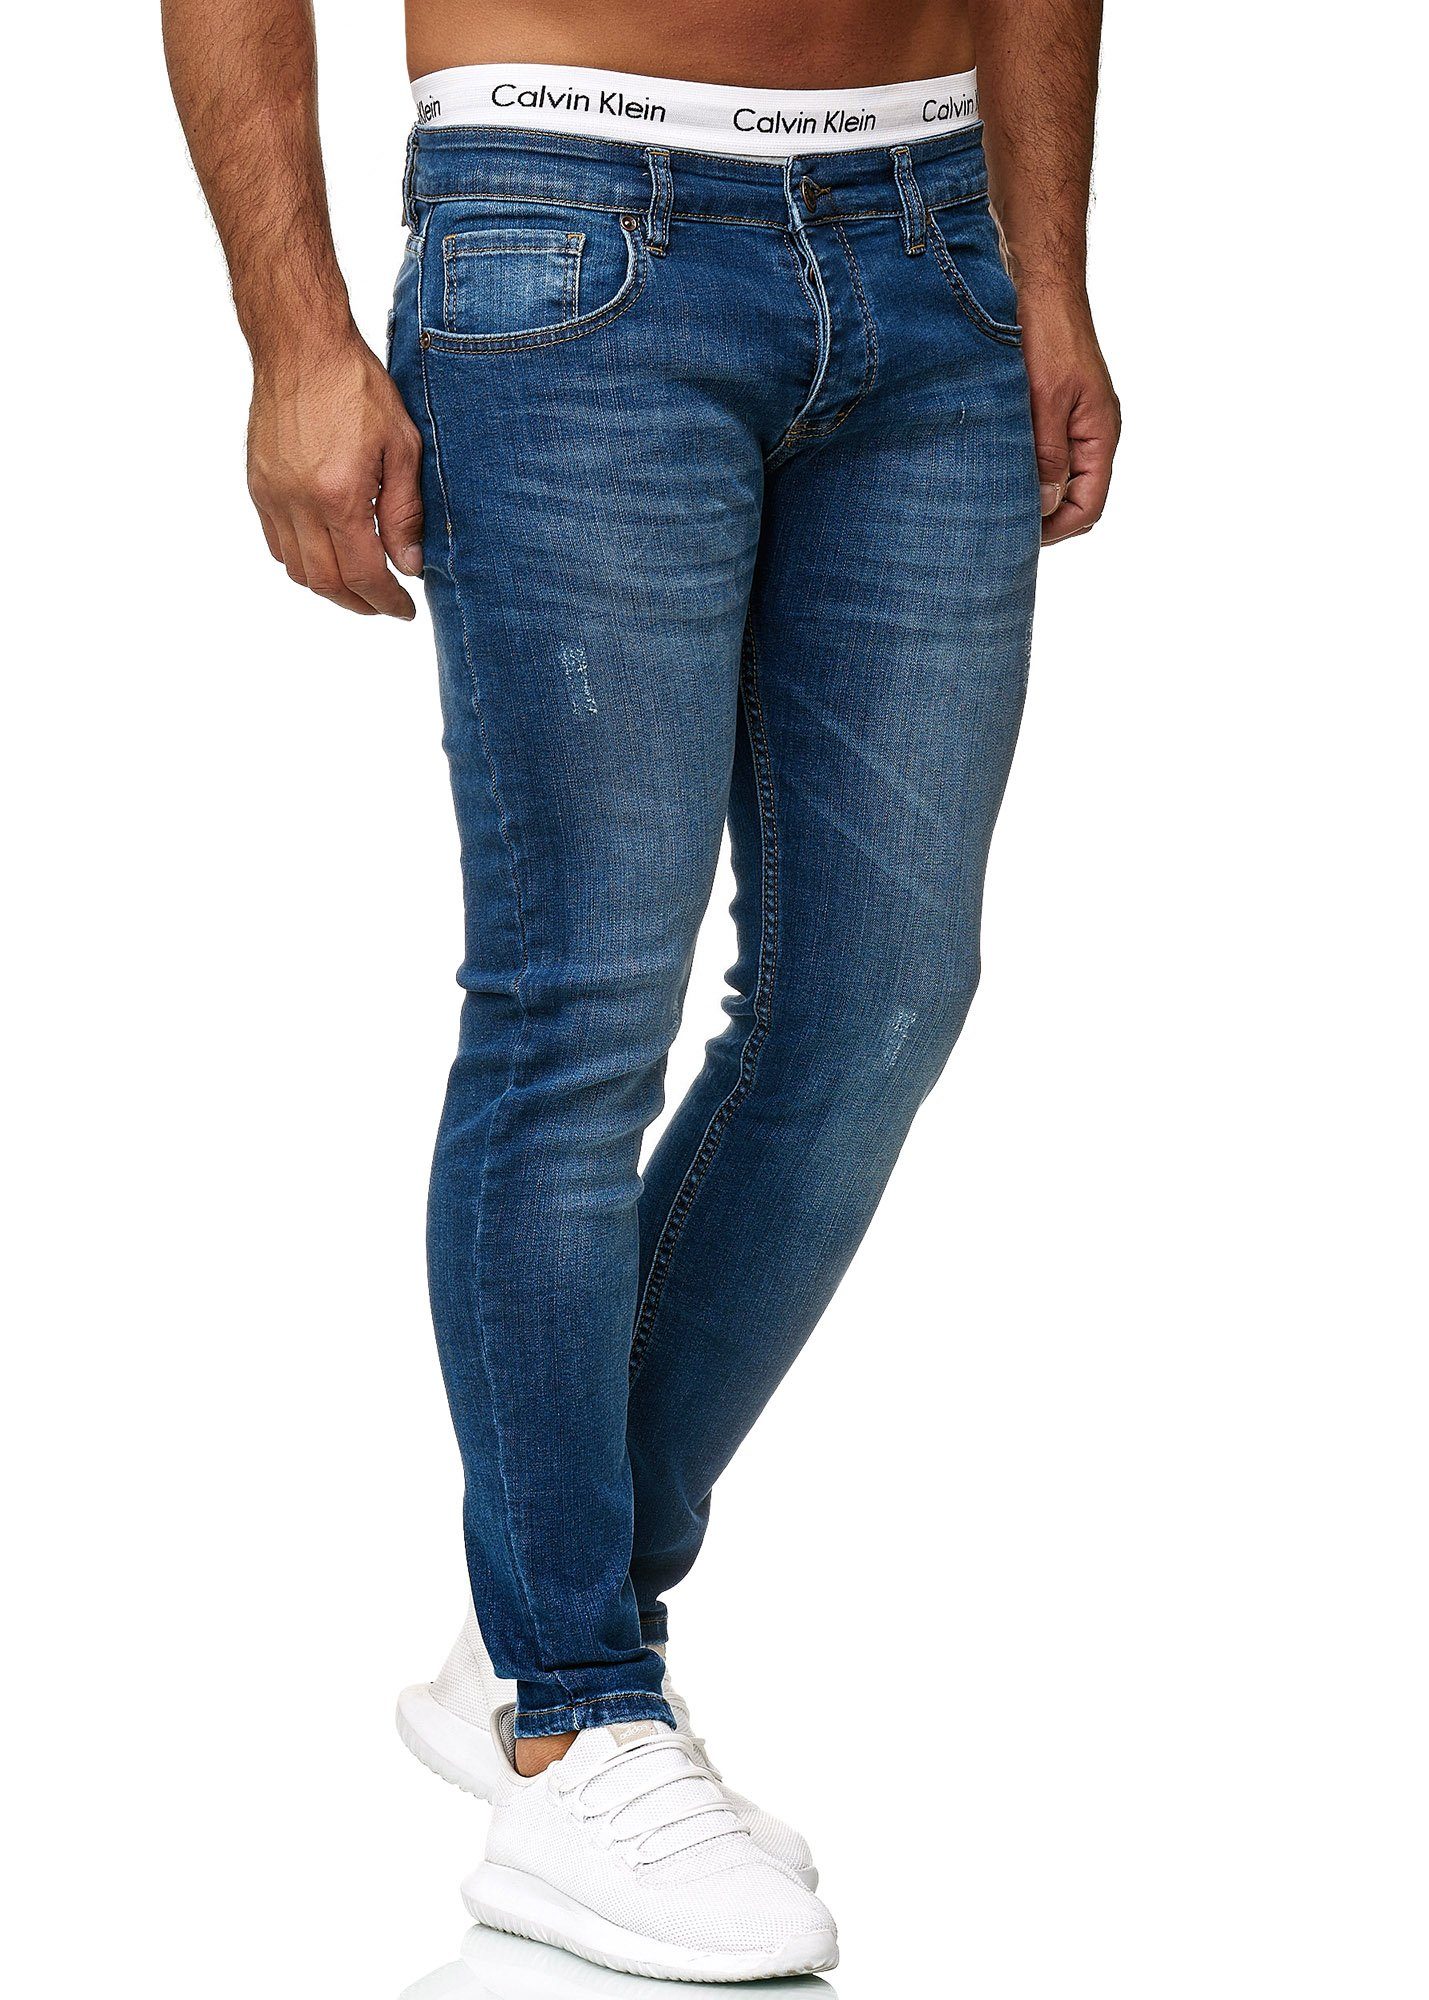 Blue Designer Code47 Jeans Fit Hose Herren Regular Light Skinny-fit-Jeans Skinny Basic Used Code47 614 Jeanshose